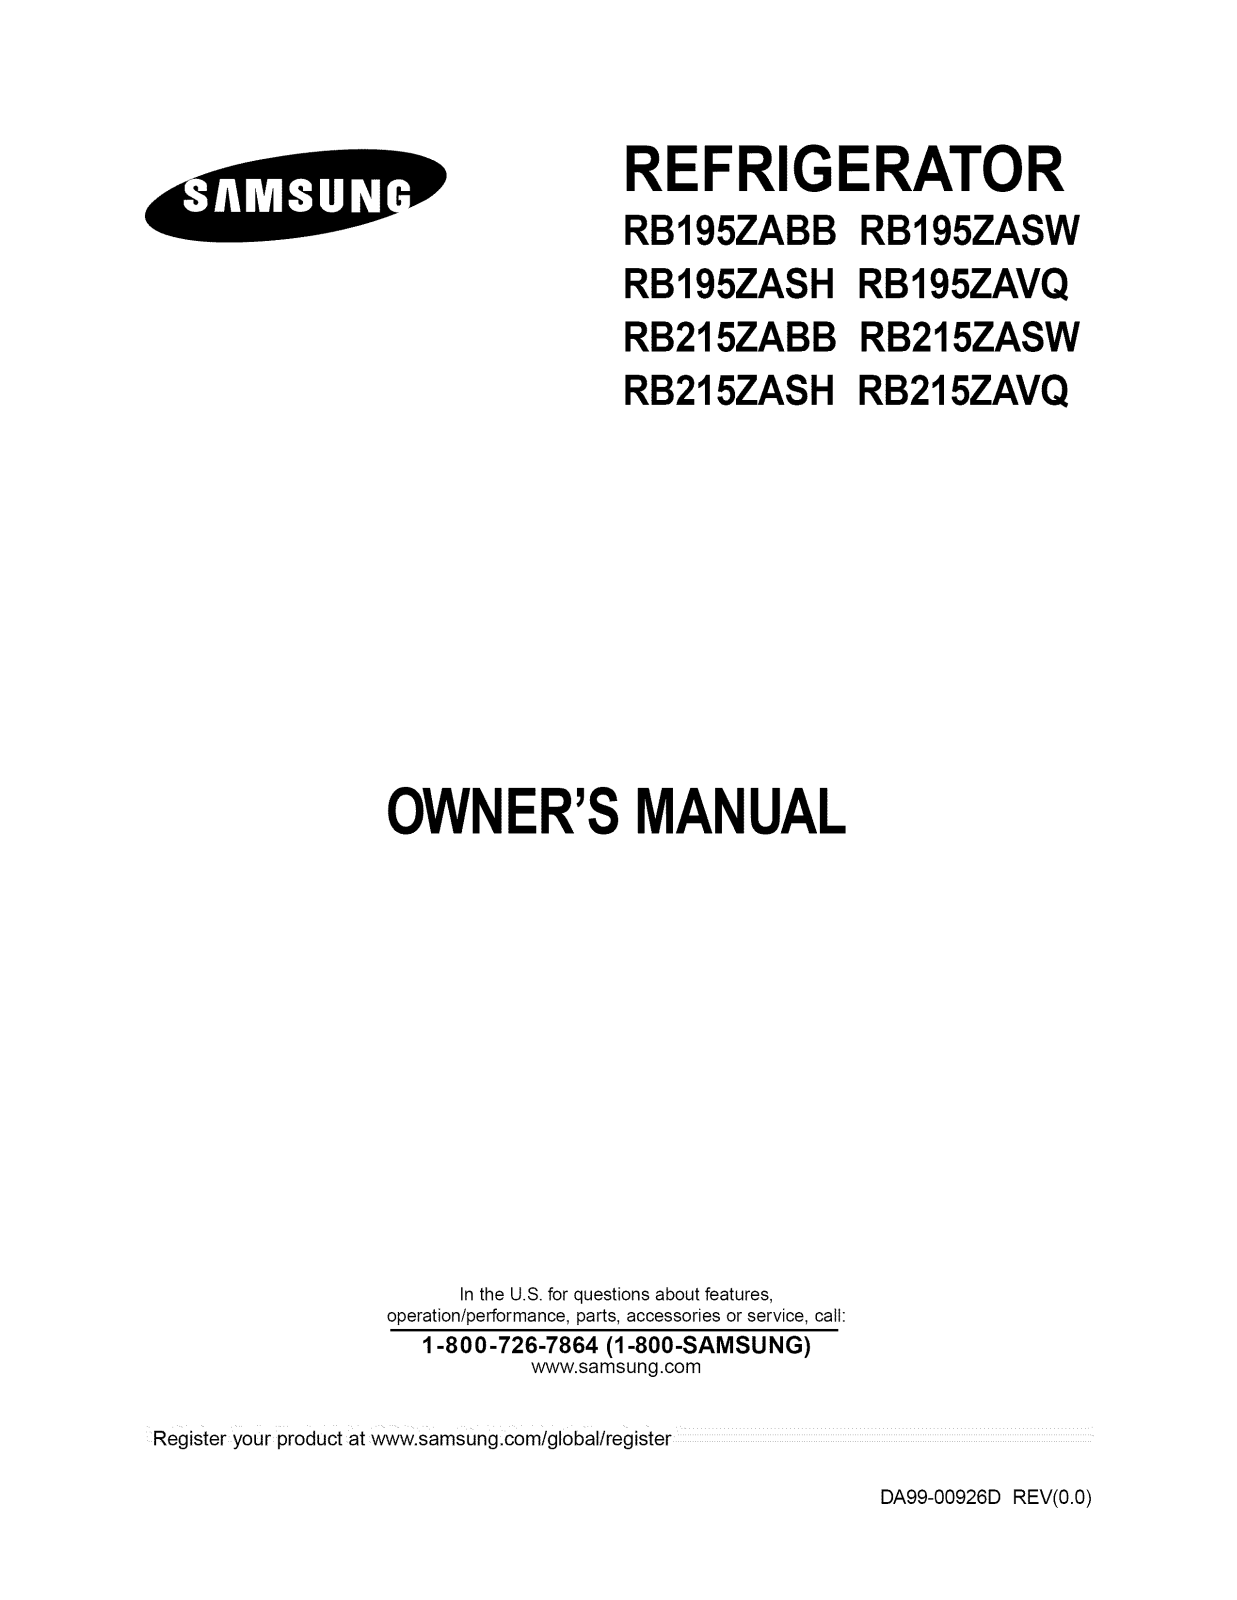 Samsung RB215ZAVQ/XAA, RB215ZASW/XAA, RB215ZASH/XAA, RB215ZABB/XAA Owner’s Manual